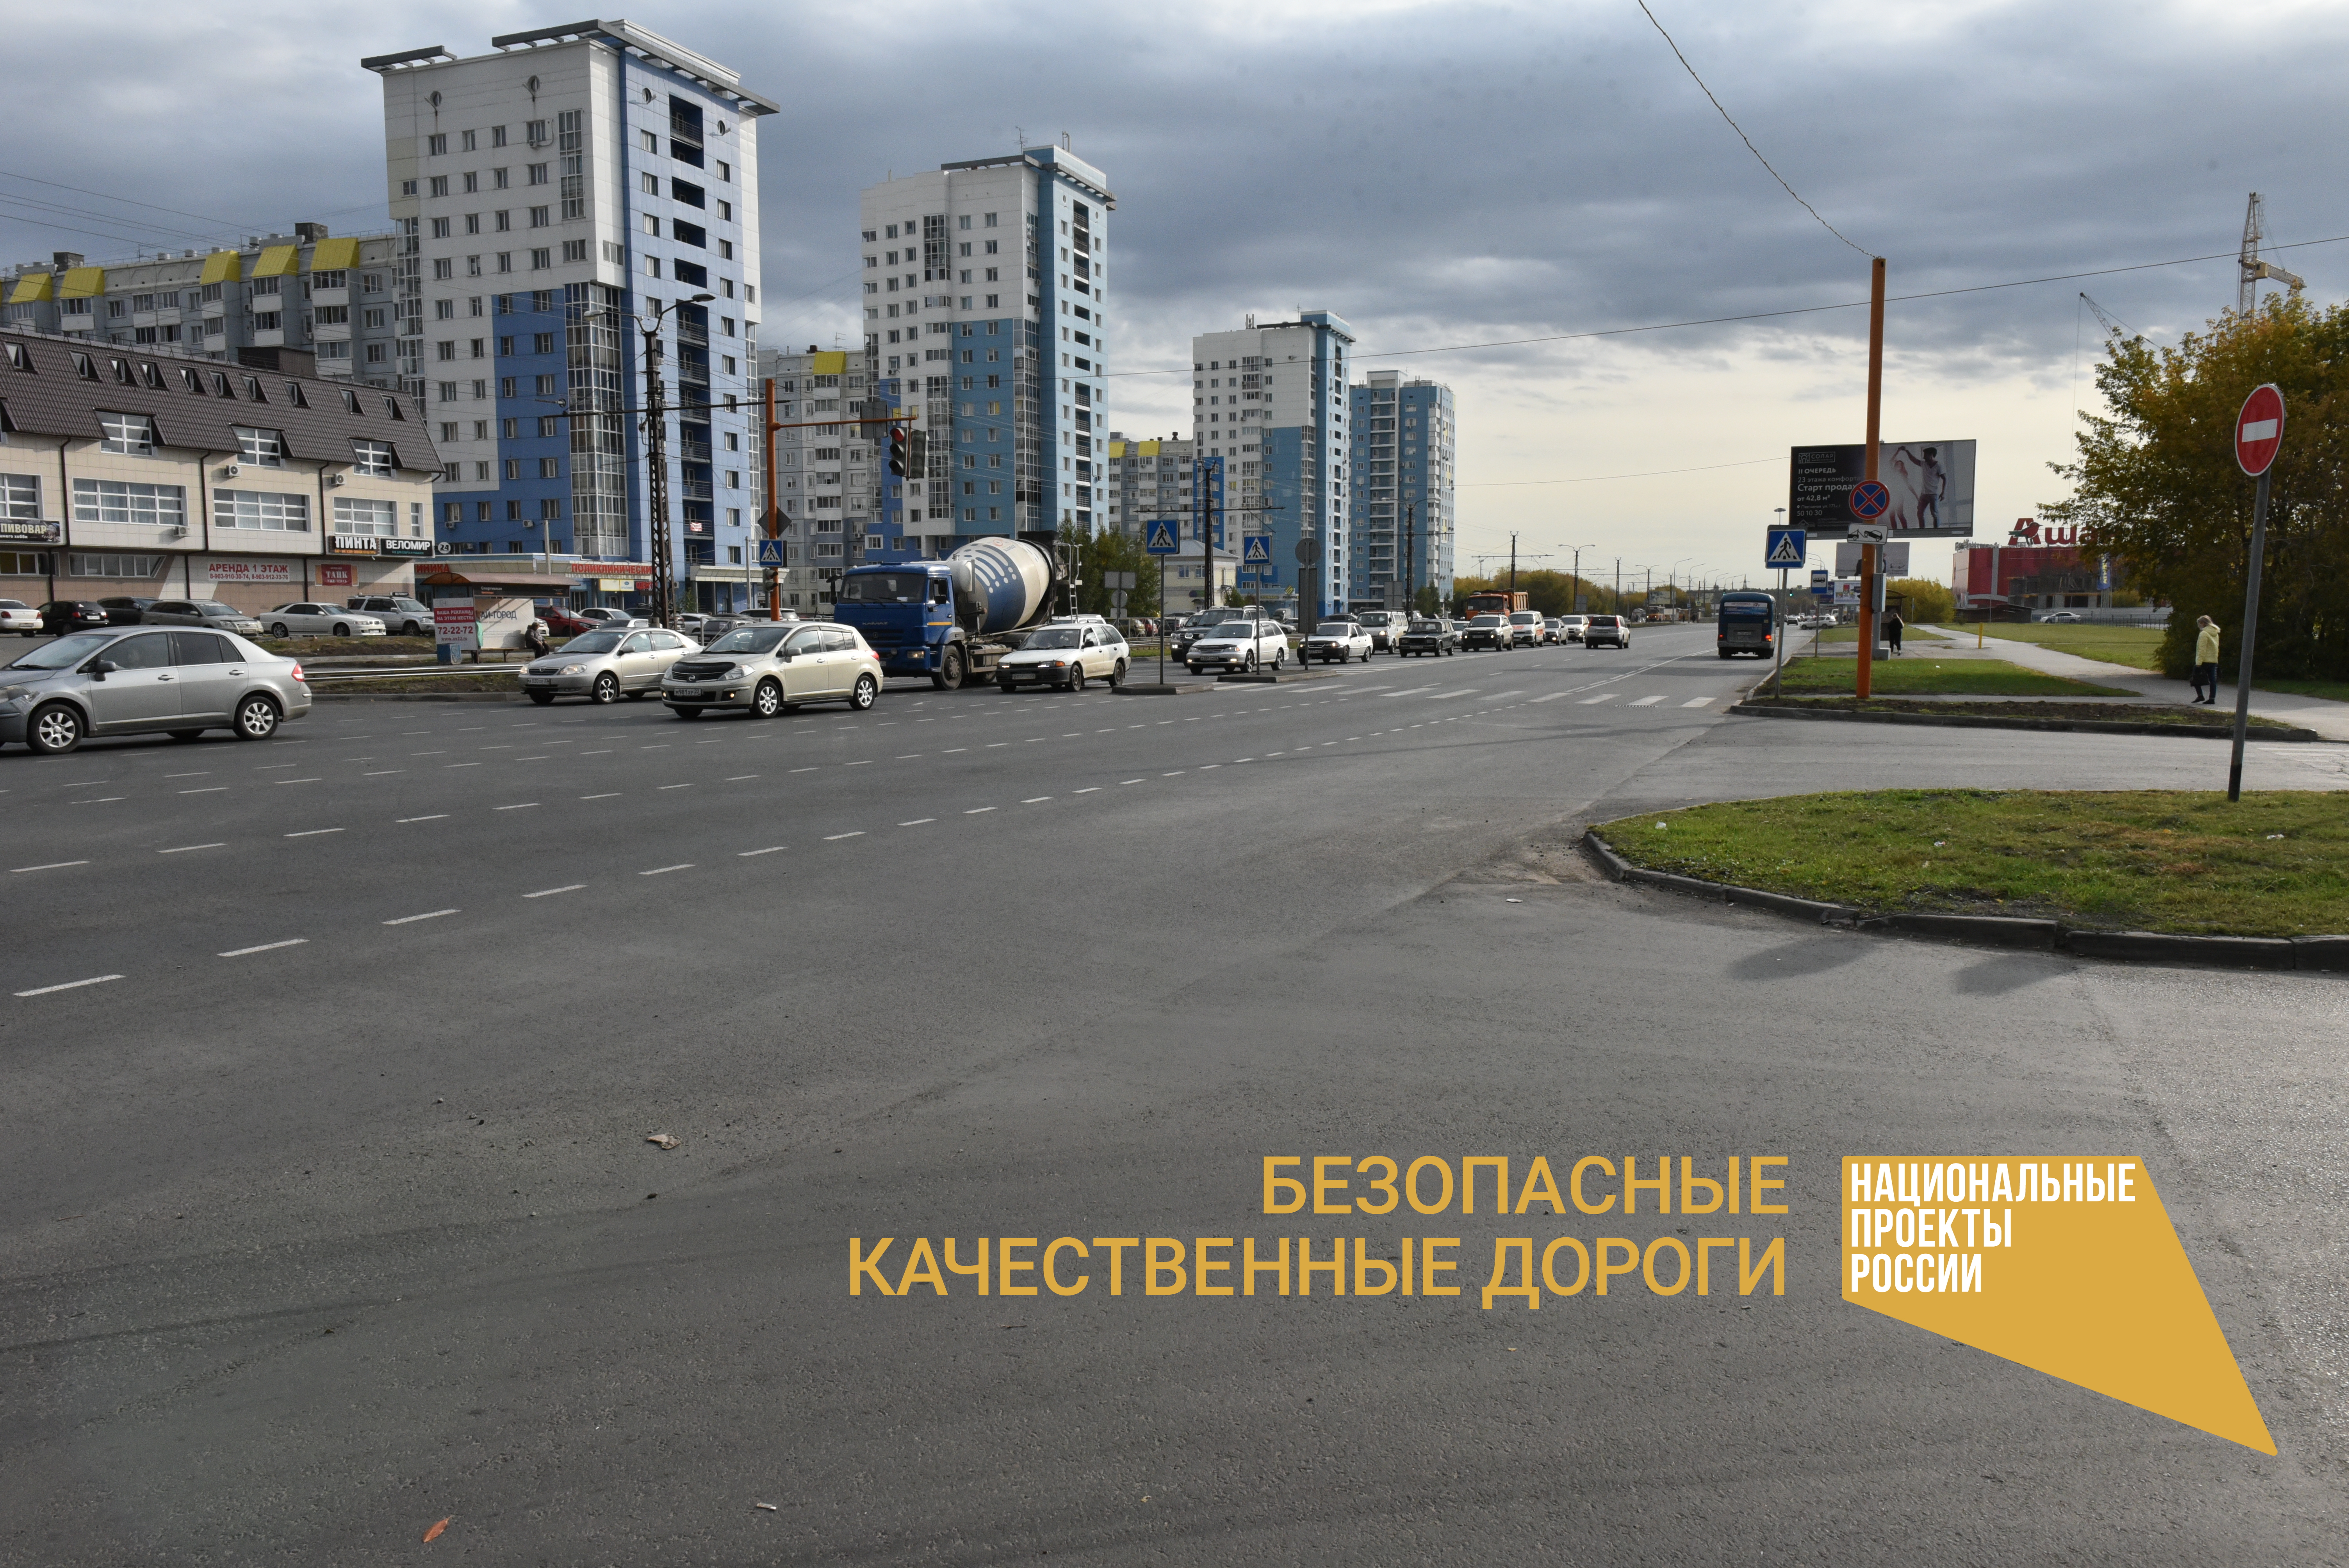 35 участков дорог отремонтированы в Барнауле по нацпроекту 